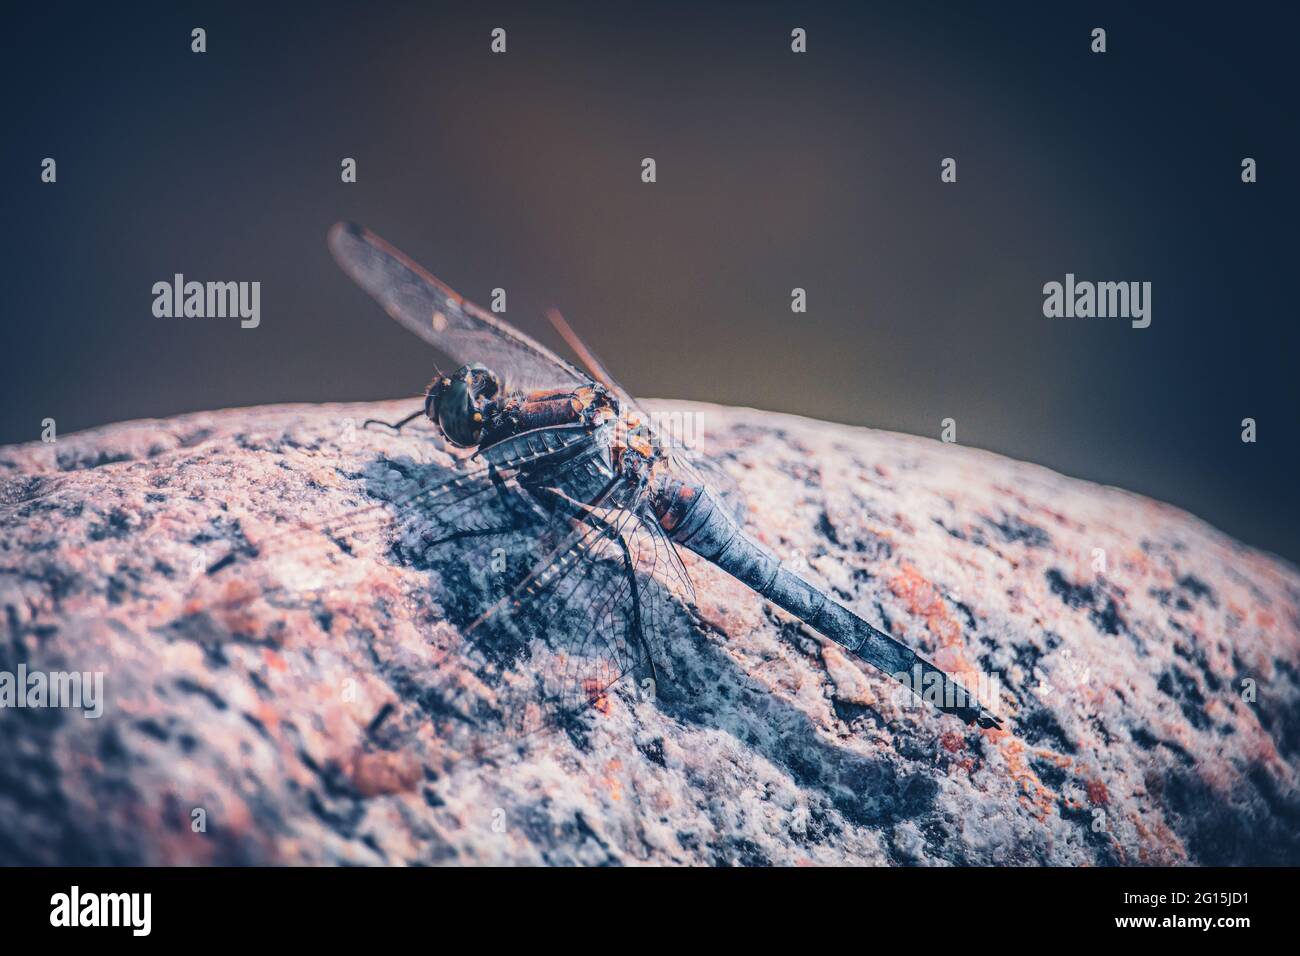 Macro foto de una libélula sentada sobre una piedra caliente y tomando el sol en verano. Libélula De lujo De cerca Insecta de Odonata Insecta. Foto de stock